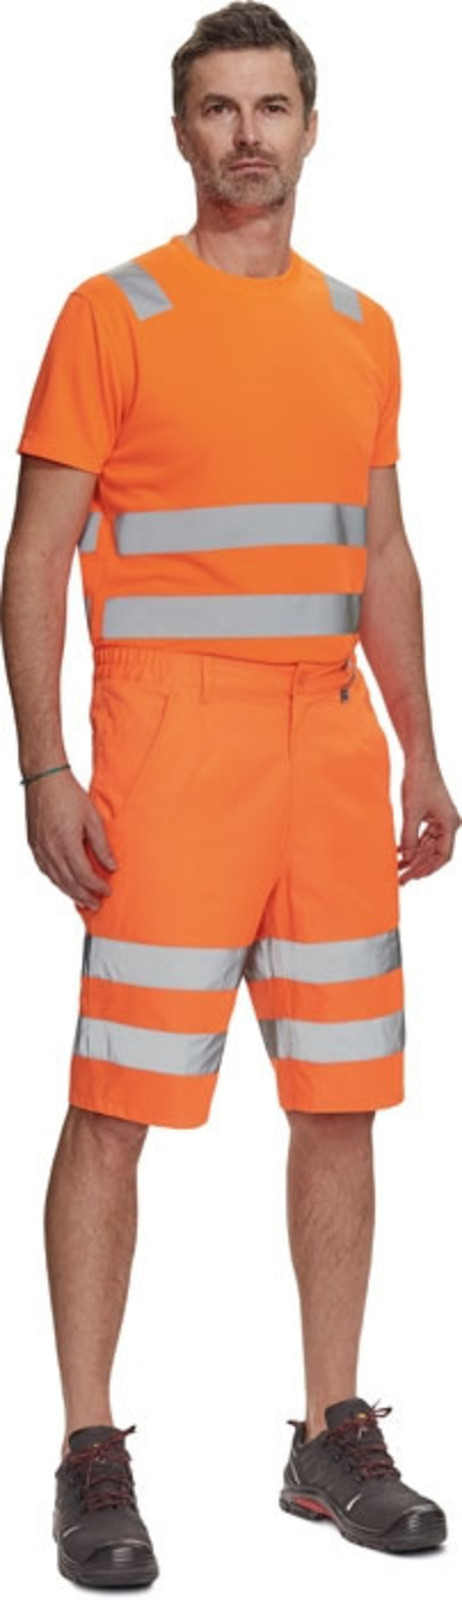 Pánske reflexné šortky Cerva Ciudades Ferrol HV - veľkosť: 58, farba: oranžová